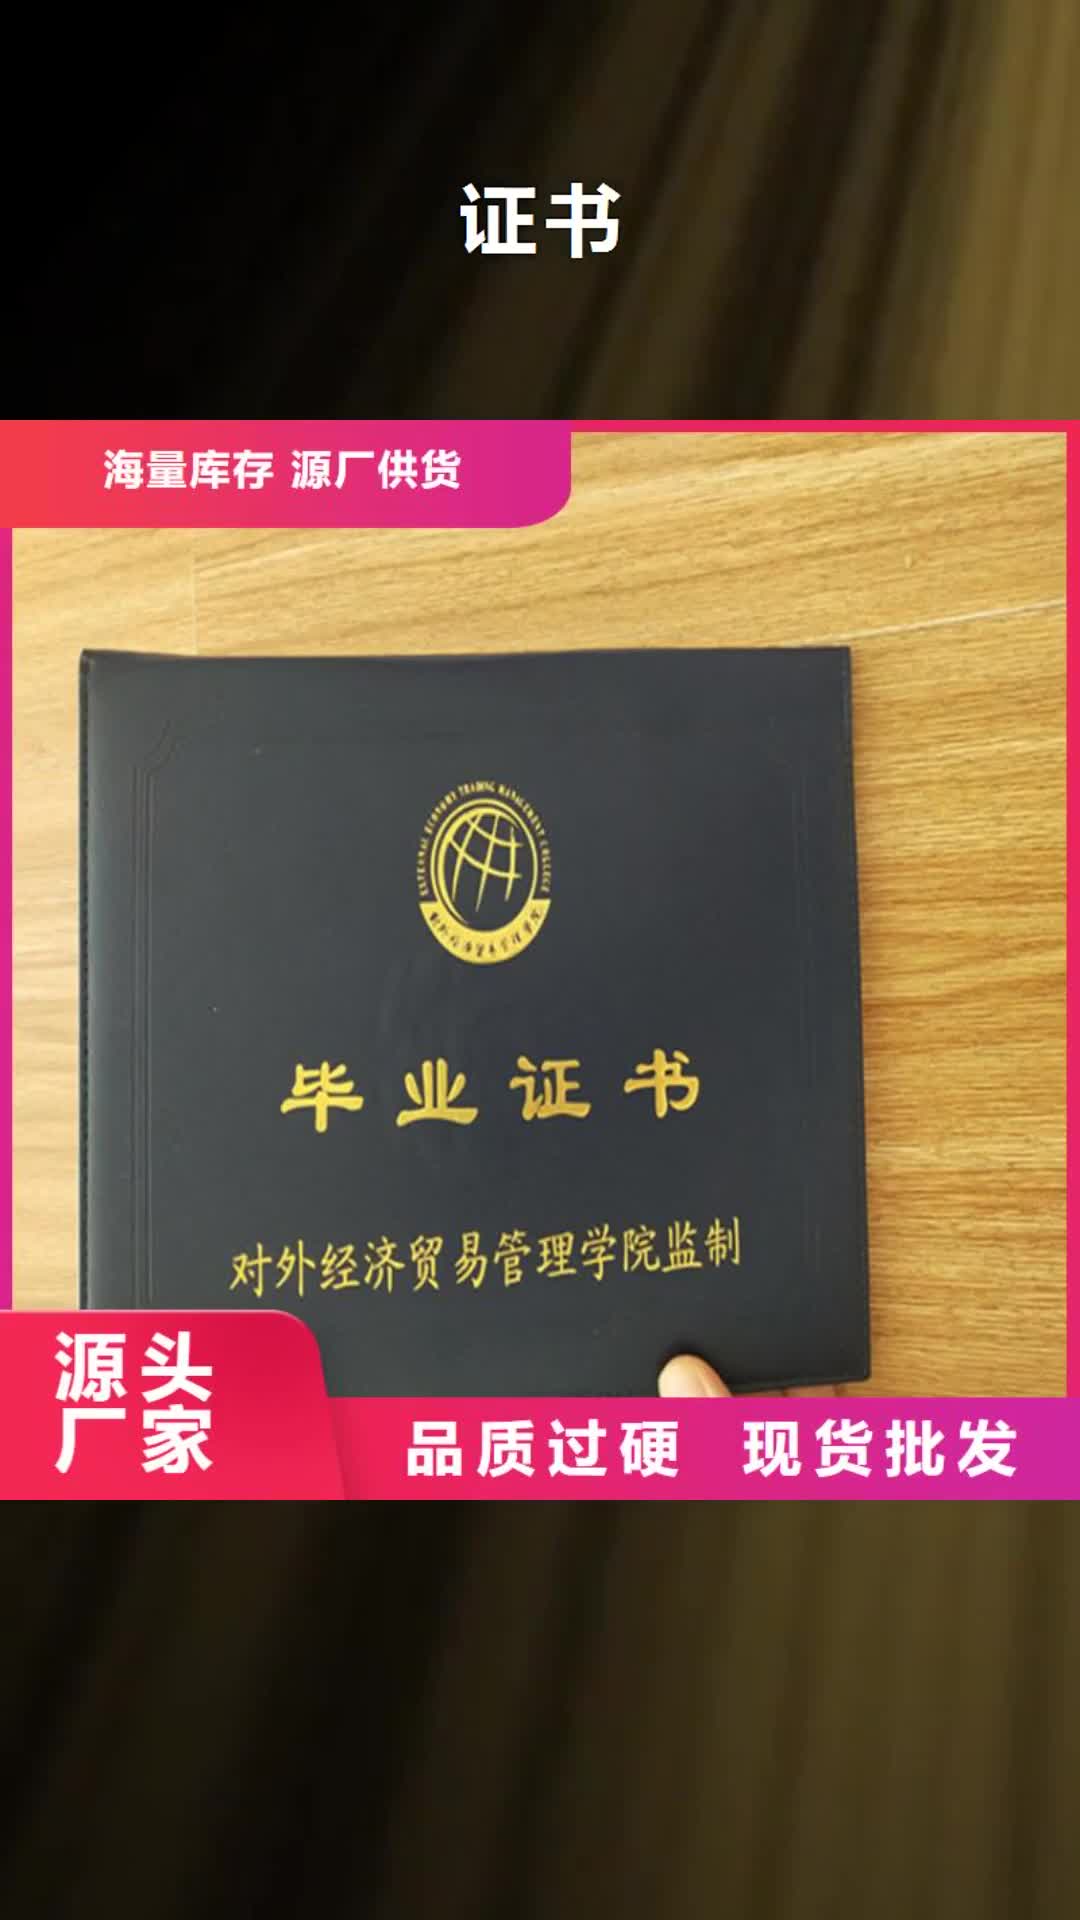 衢州【】-新版机动车合格证印刷厂一站式采购商家